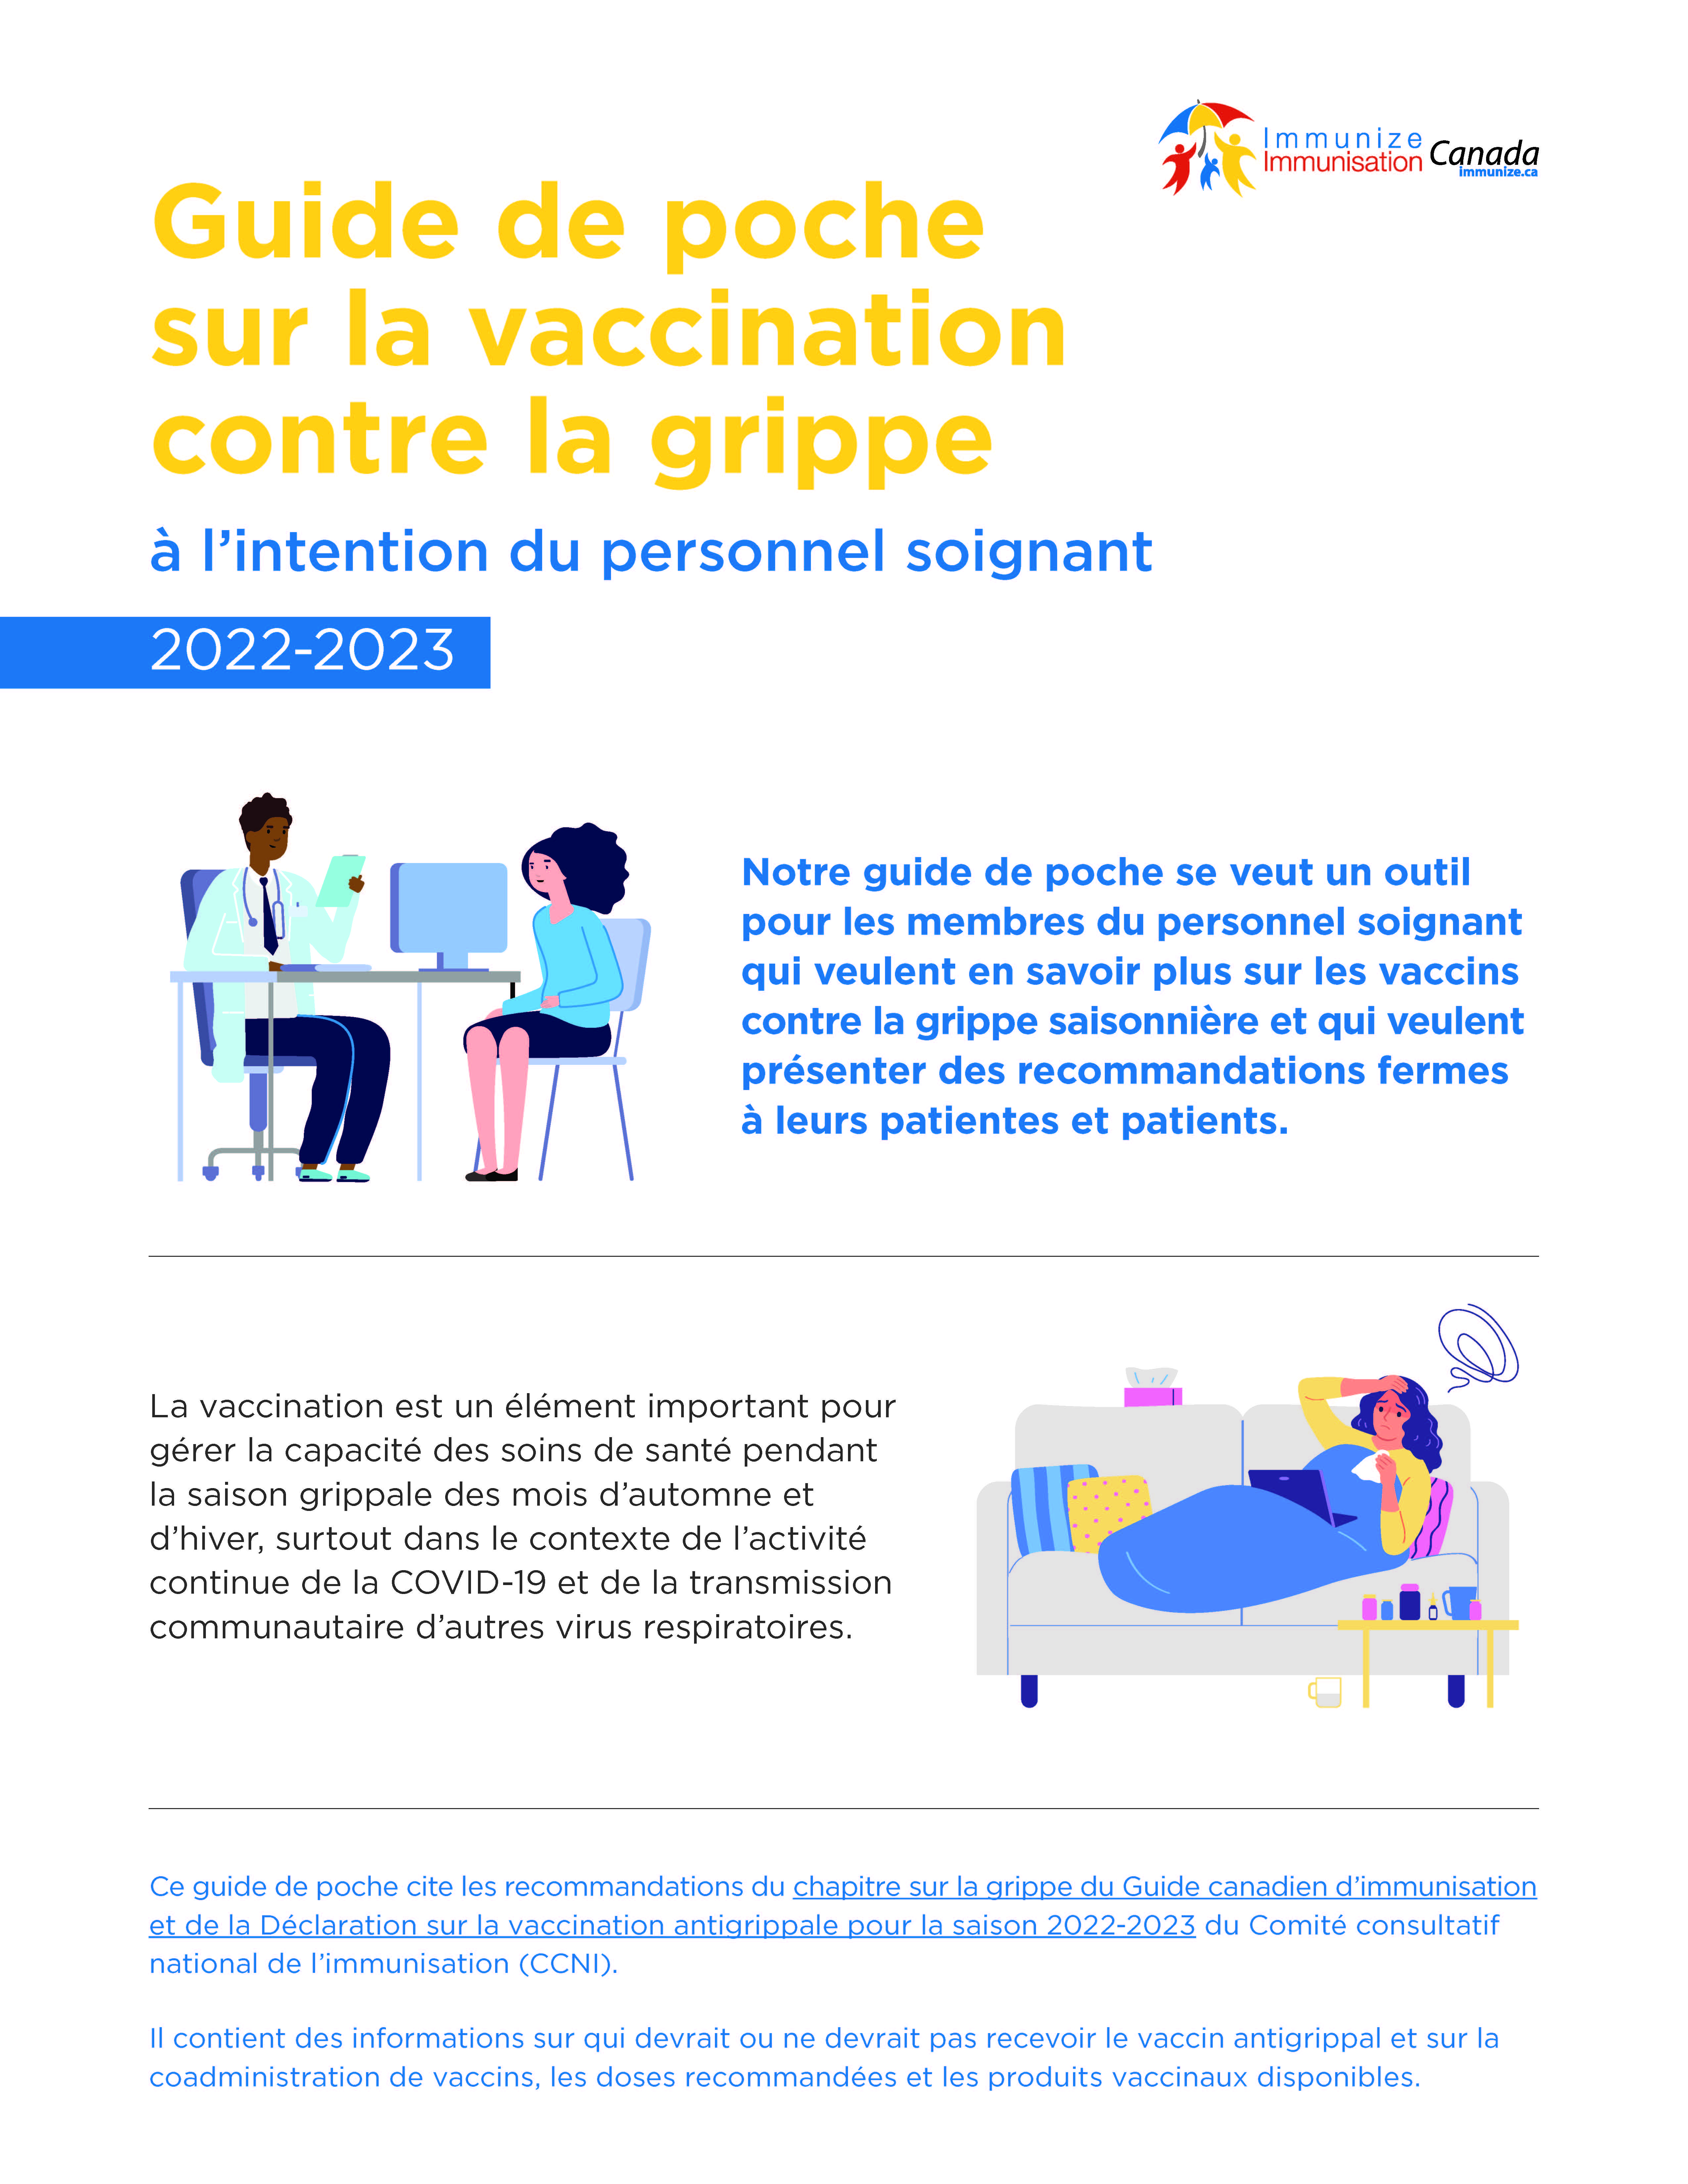 Guide de poche sur la vaccination contre la grippe à l’intention du personnel soignant 2022-2023